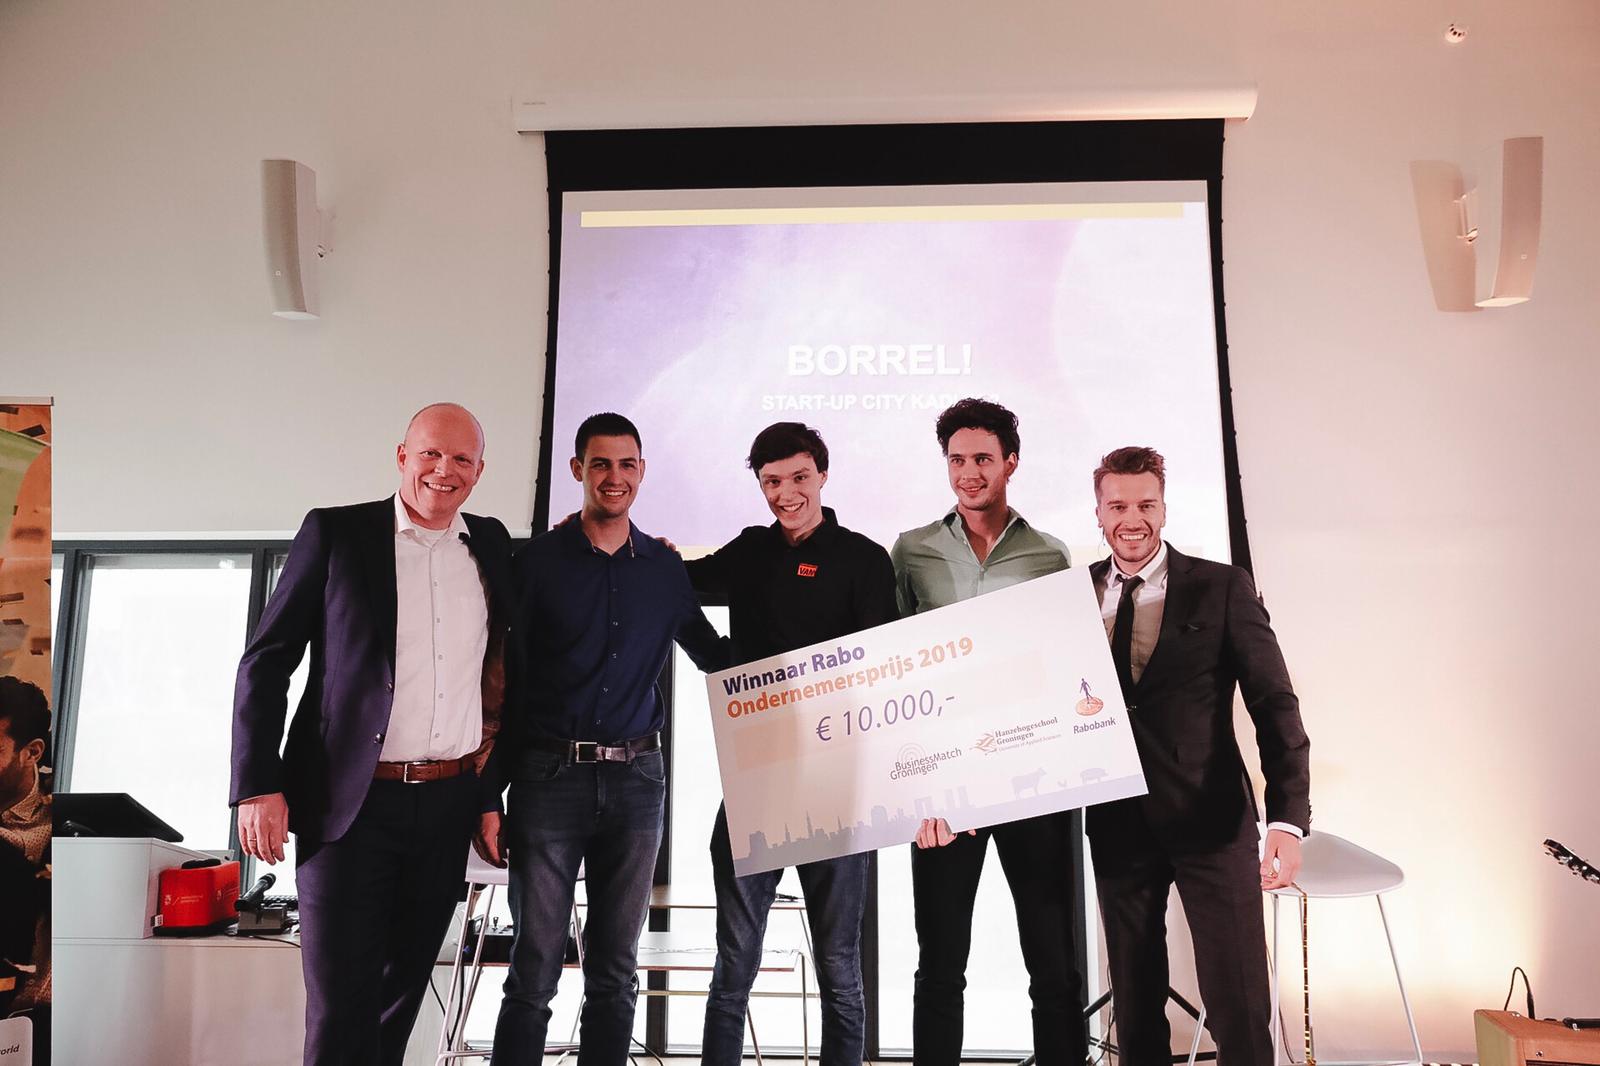 Jorn Hofman wint Rabo Ondernemersprijs tijdens Dag van de Ondernemende Student